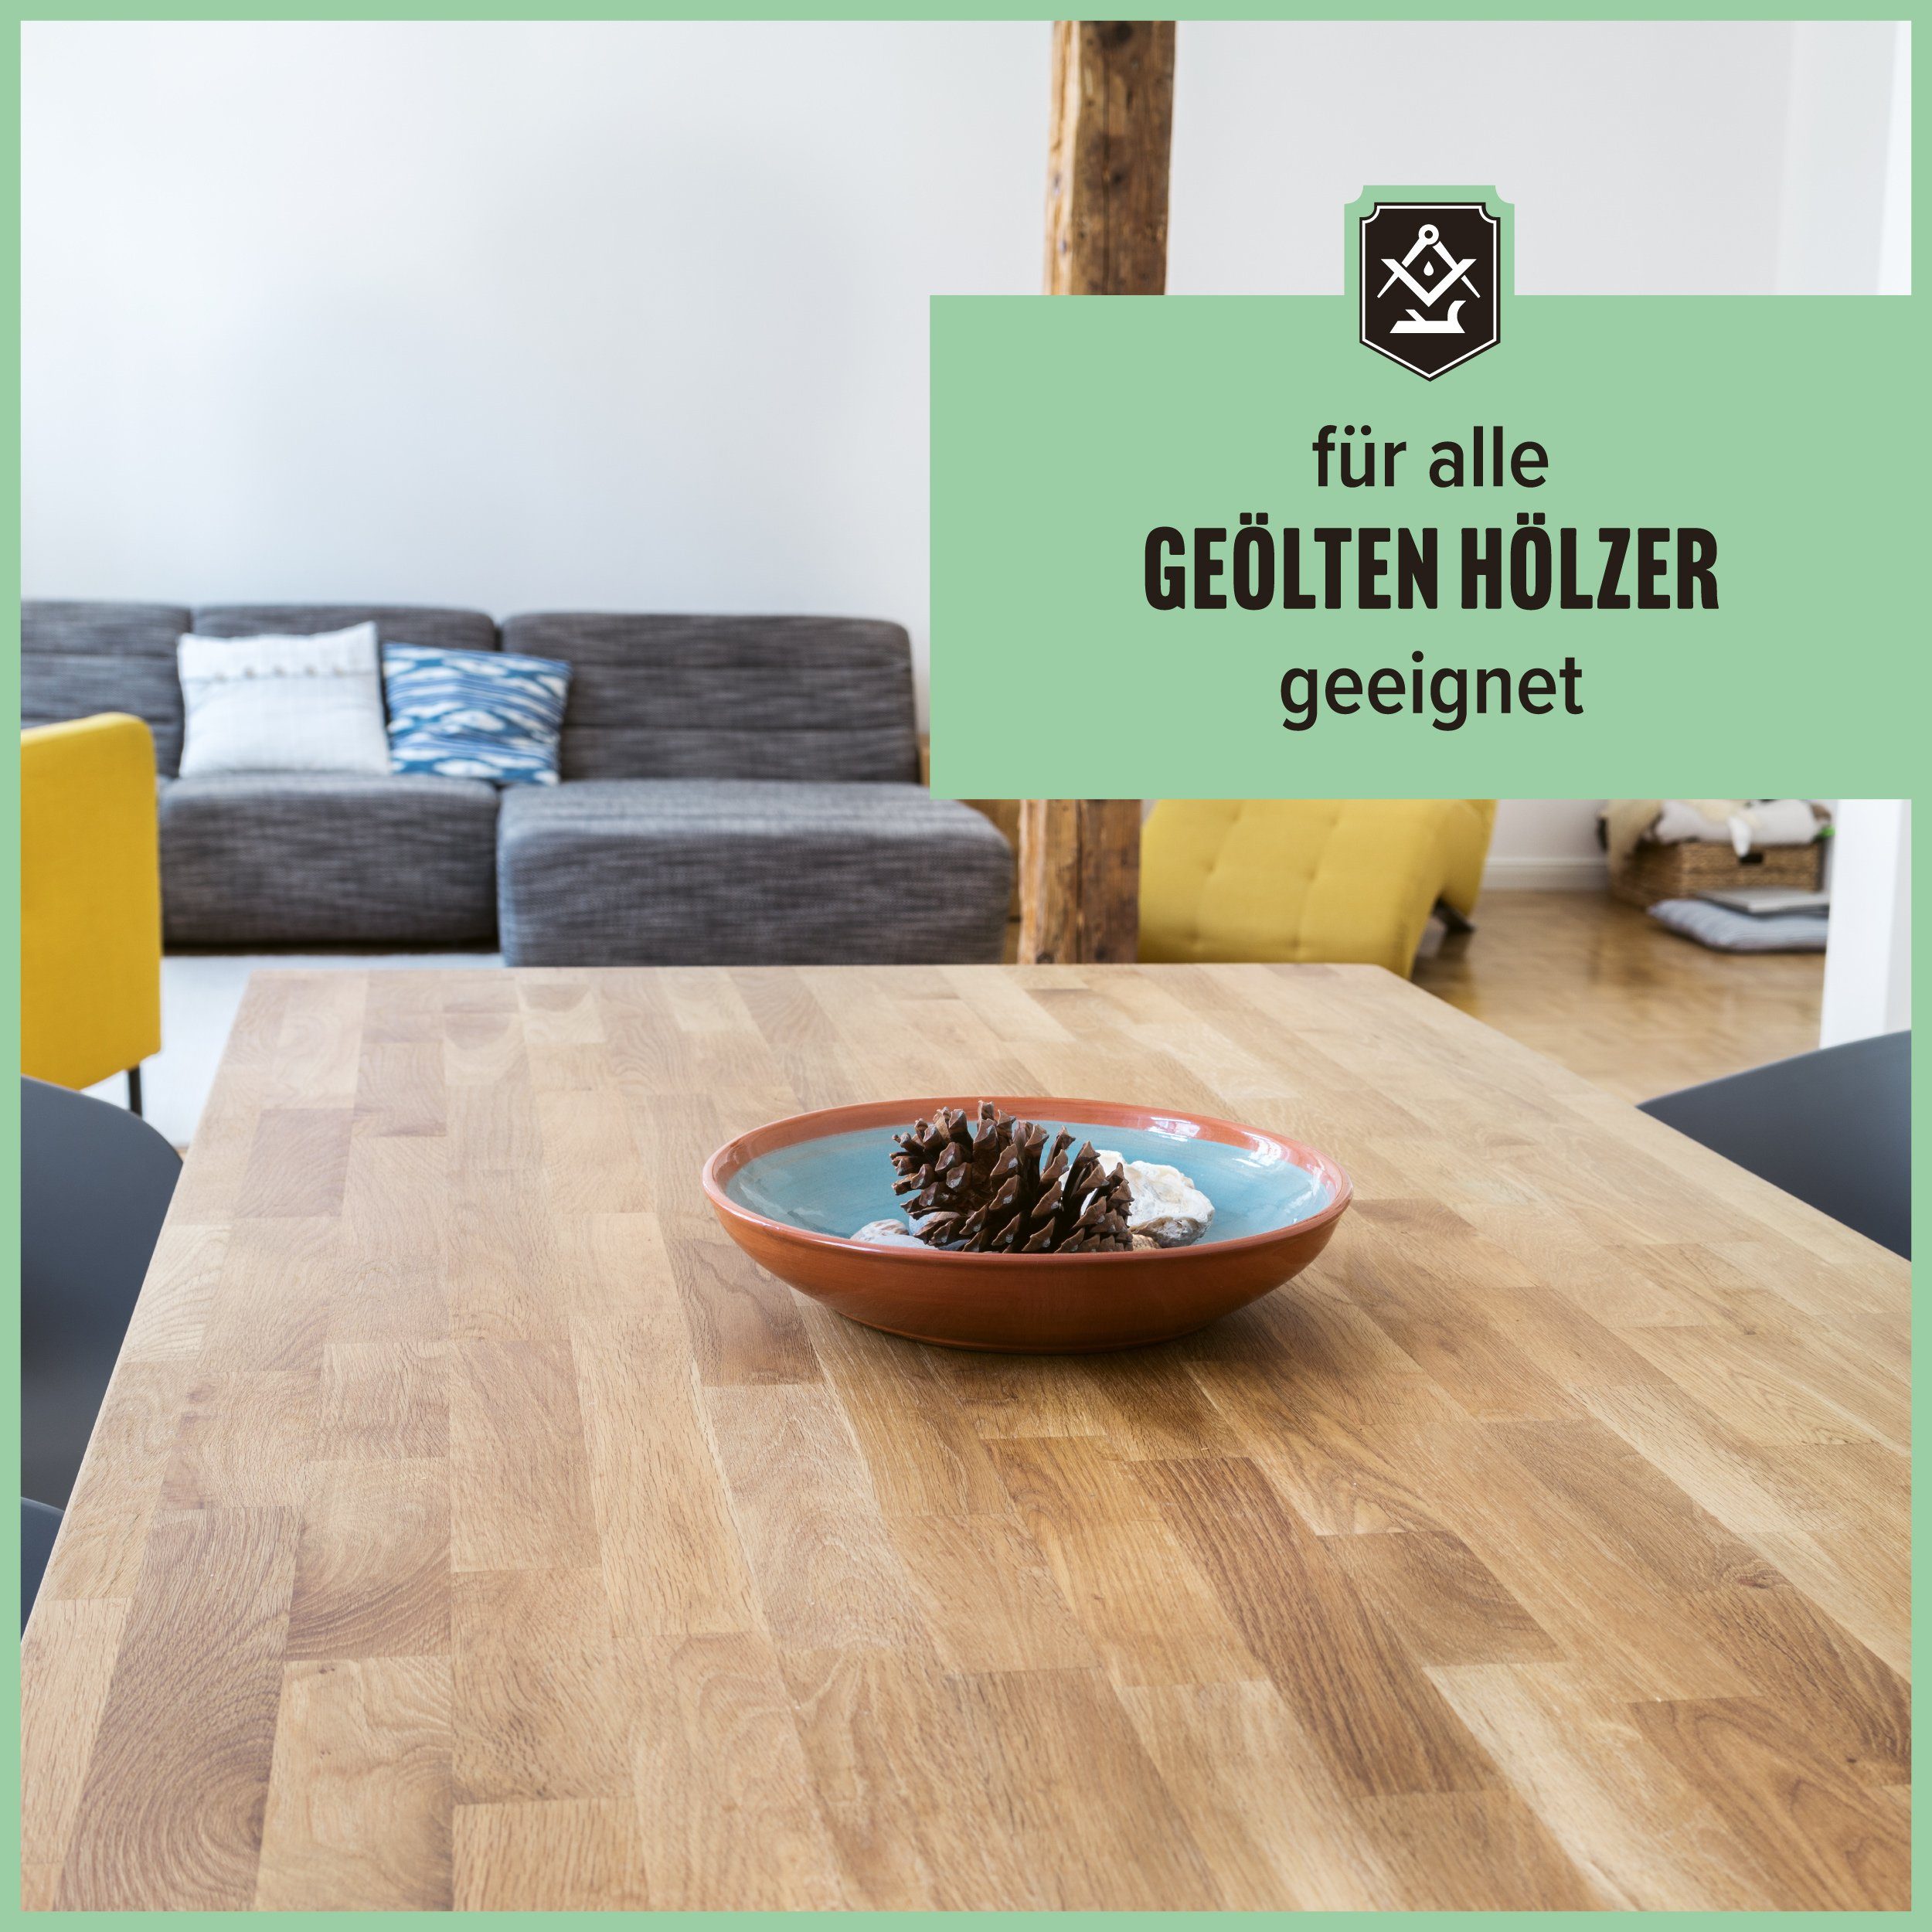 Baumwolltuch Holzöl - für Öl Set, + unbehandelten Holz - noch Holzoberflächen Schrader in Germany Made oder geölten zweiteiliges